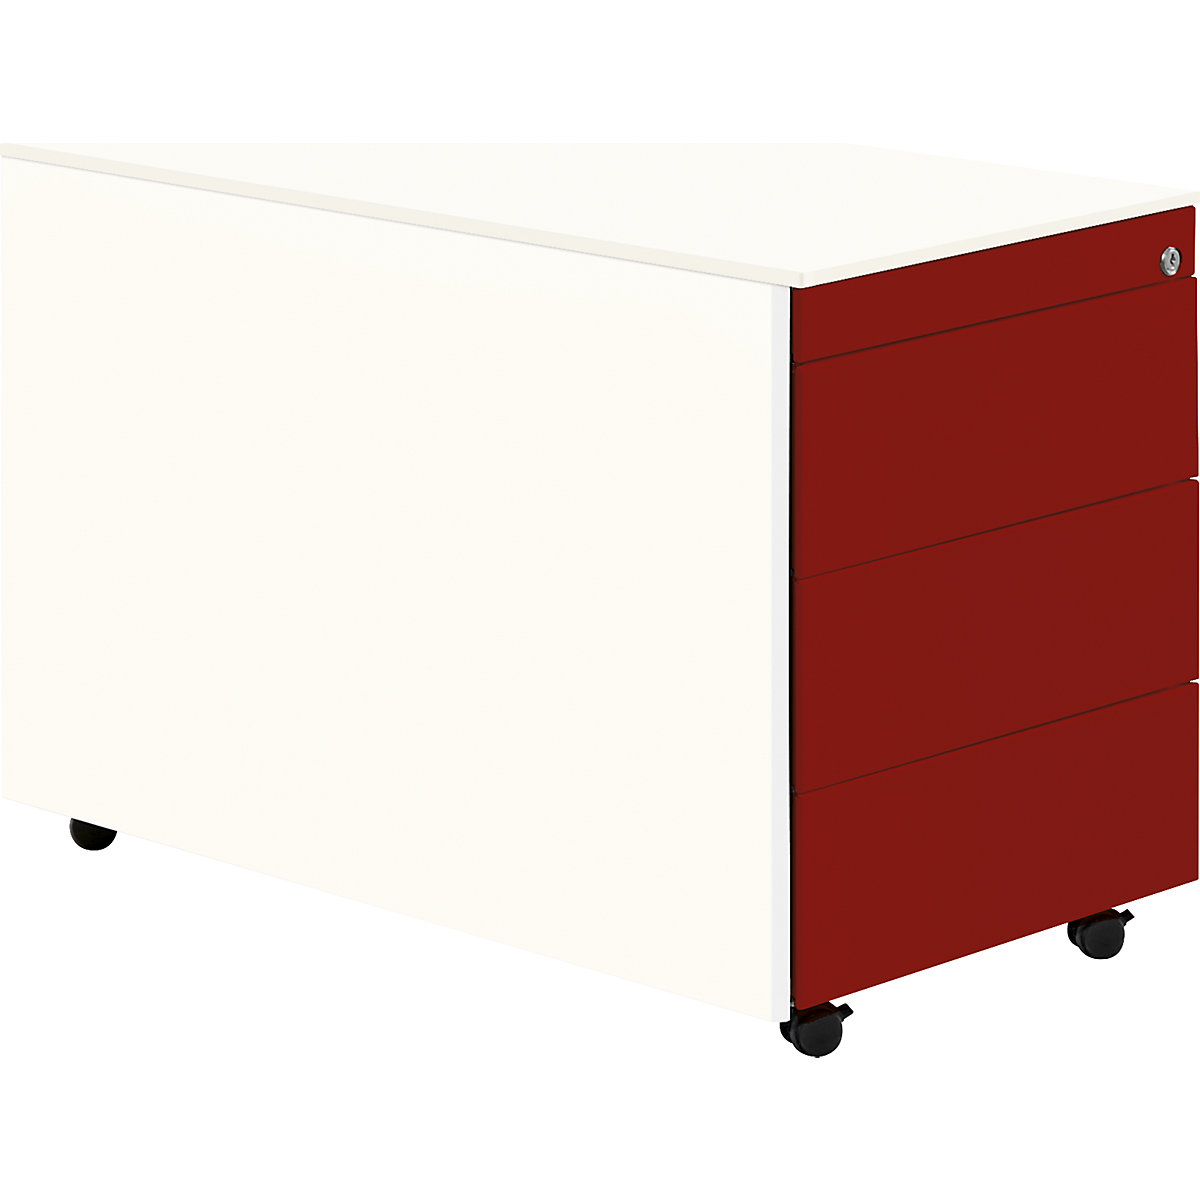 Zásuvkový kontajner s kolieskami – mauser, v x h 570 x 800 mm, oceľová doska, 3 zásuvky, čistá biela / rubínová červená / čistá biela-8